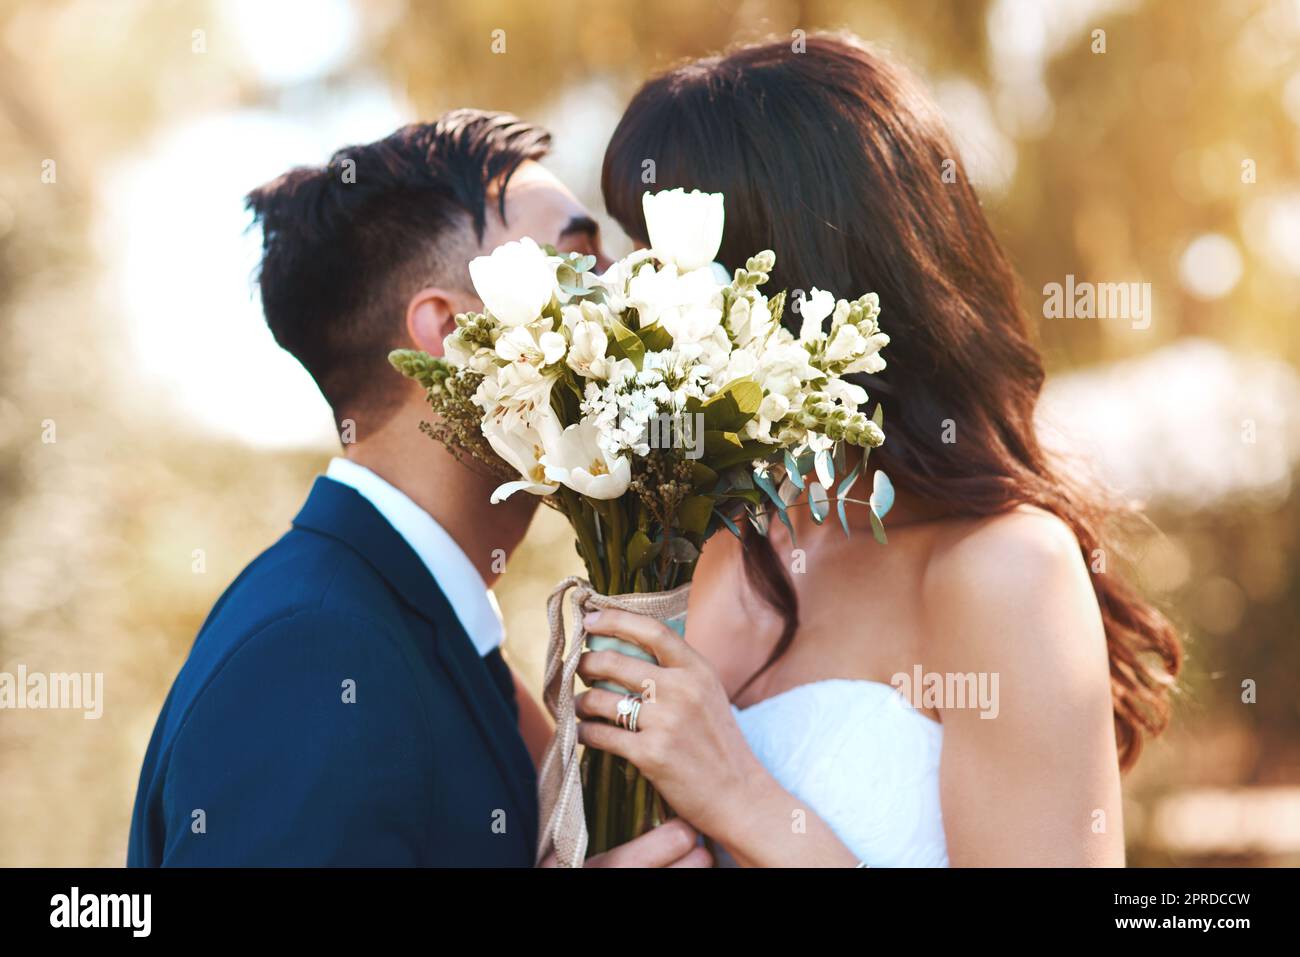 Waren bereit für diese Flitterwochen. Eine Braut und ein Bräutigam bedeckten ihre Gesichter mit einem Blumenstrauß beim Küssen. Stockfoto